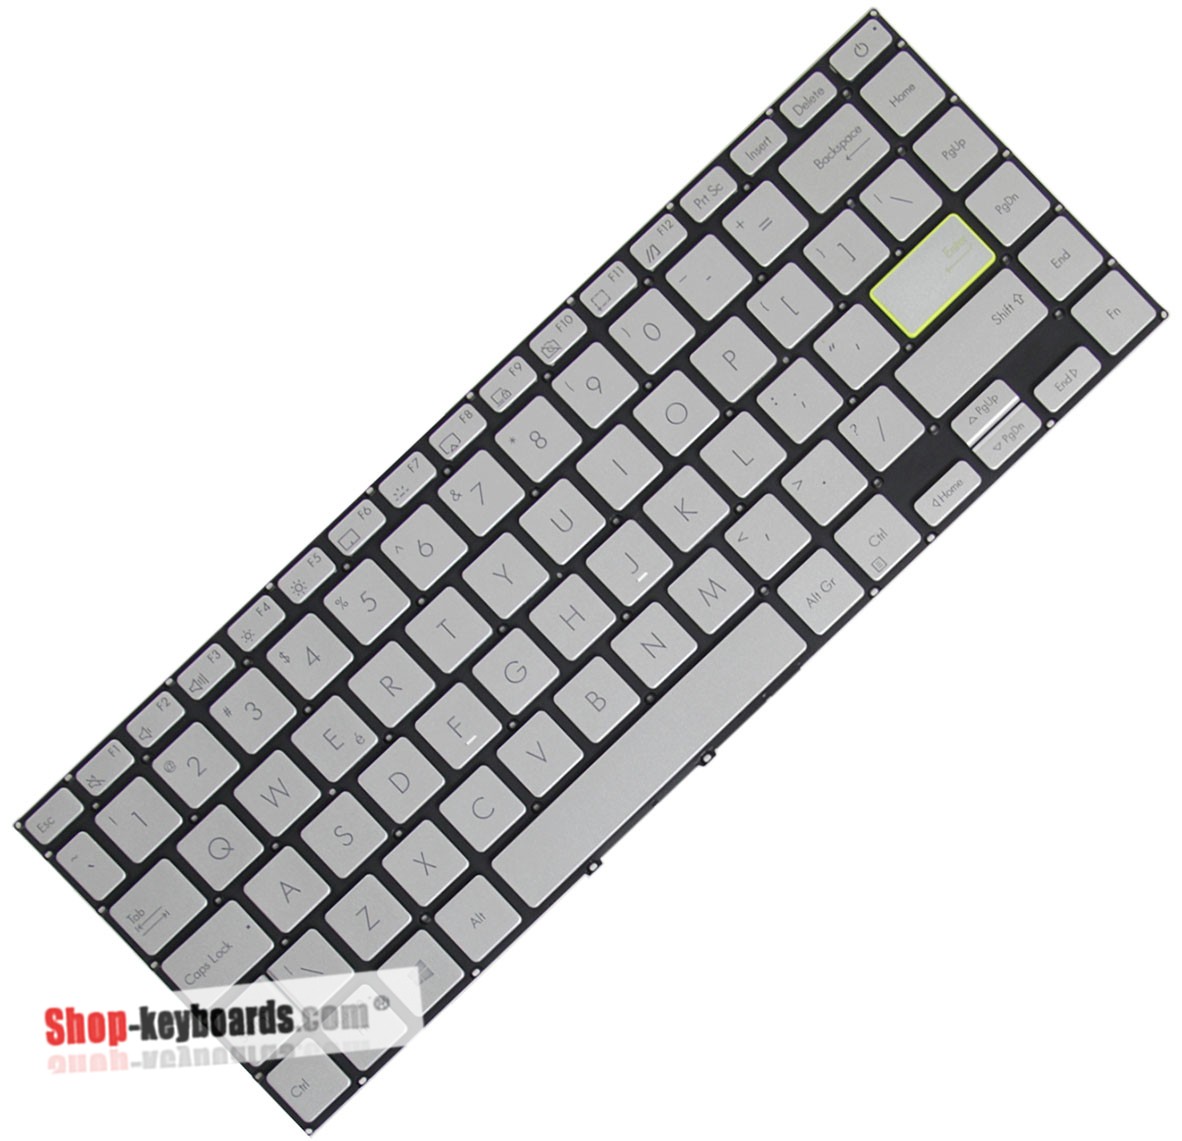 Asus AEXKSJ00130  Keyboard replacement